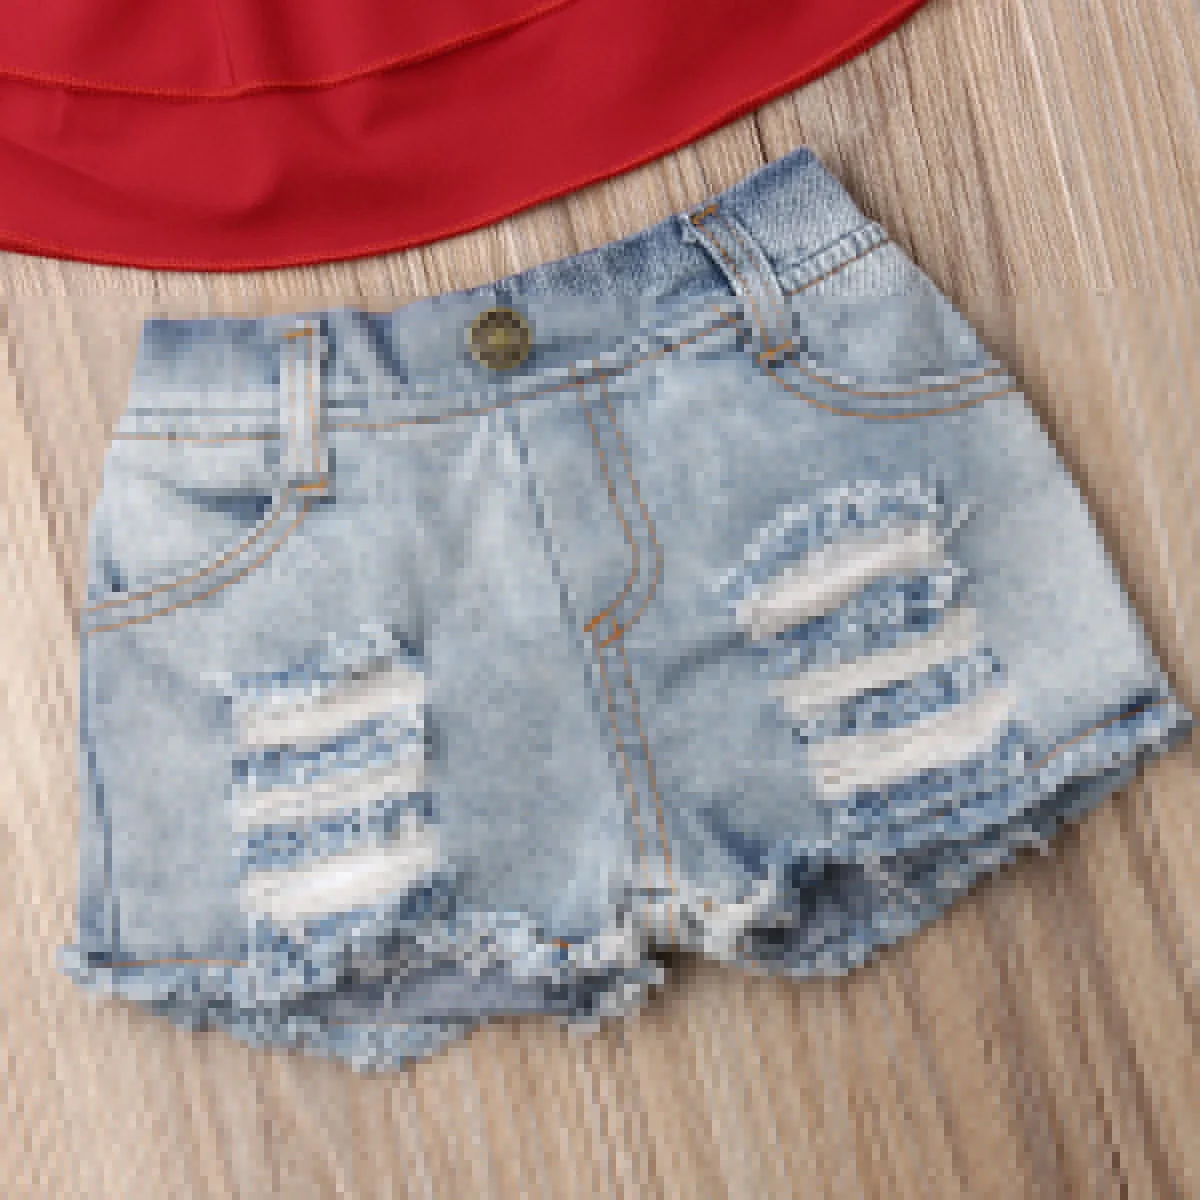 Pudcoco/Летняя одежда для маленьких девочек укороченные топы с рюшами и открытыми плечами джинсовые рваные Короткие штаны комплект из 2 предметов, летняя одежда